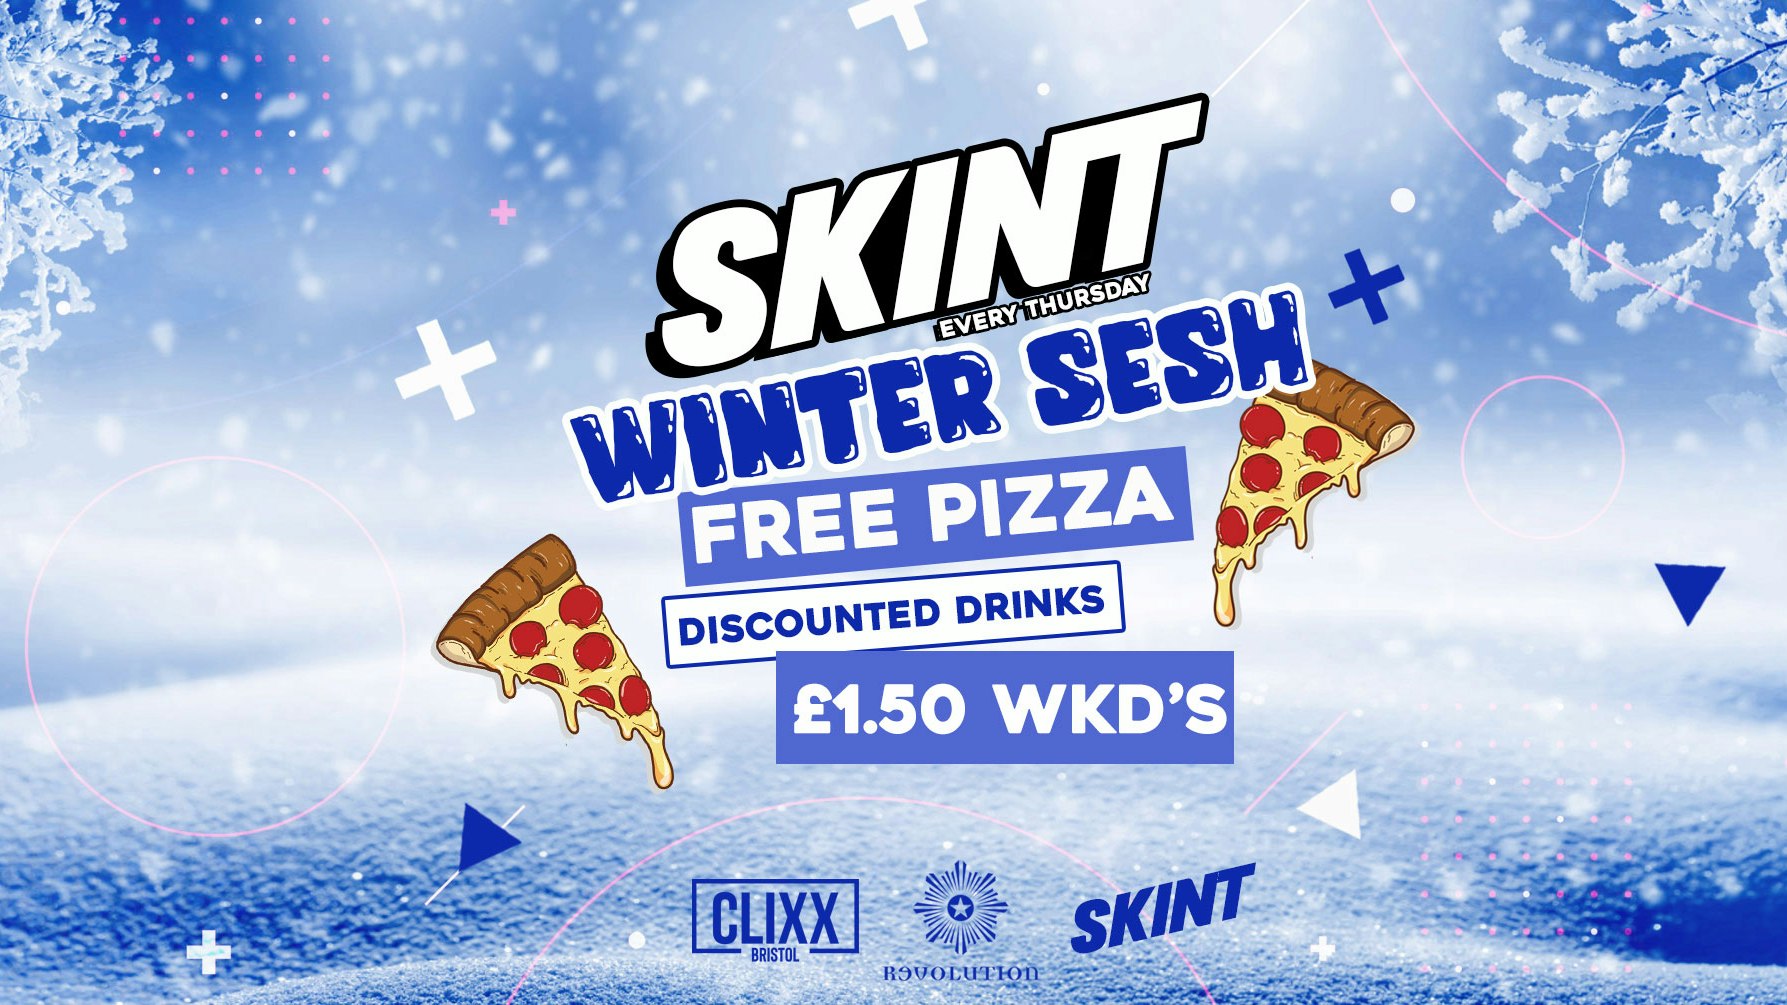 SKINT | WINTER SESH! – FREE PIZZA + £1.50 WKD’s